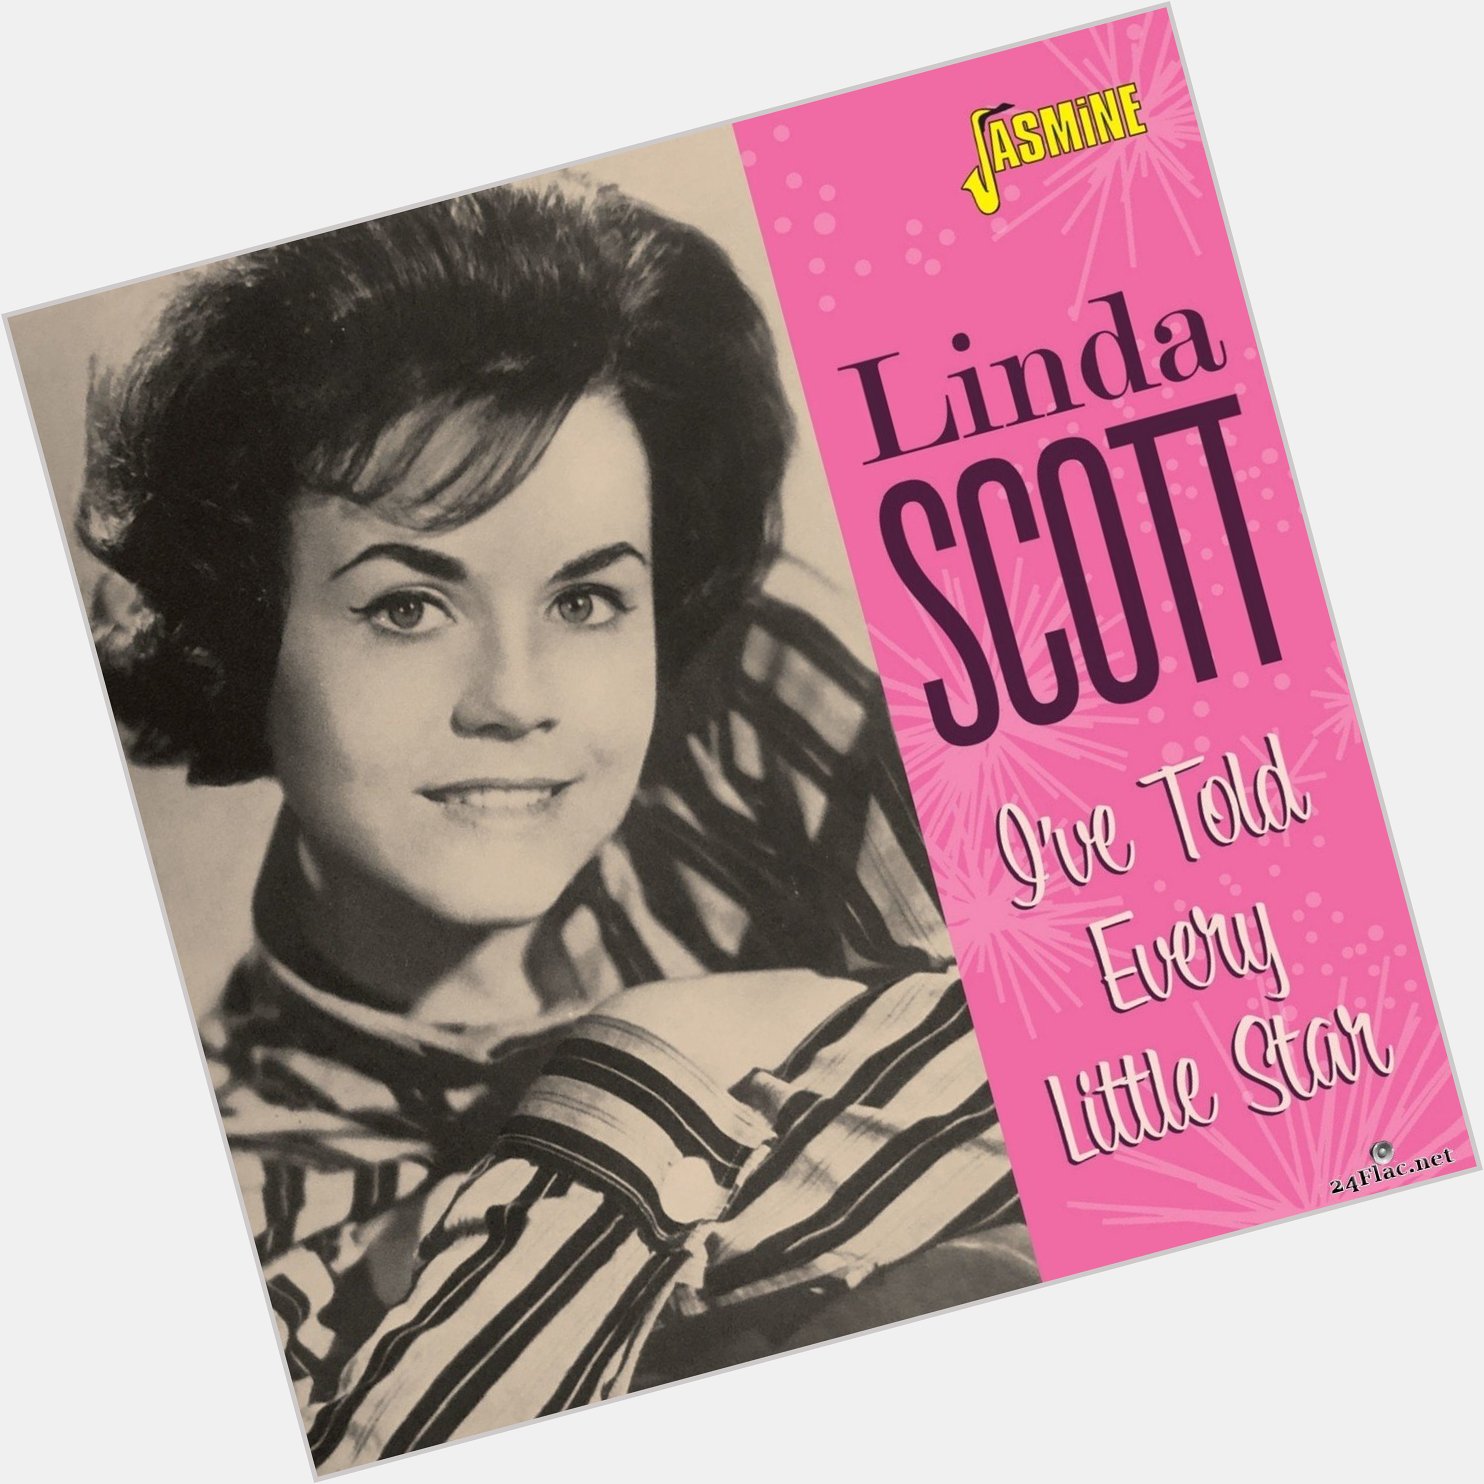 Linda Scott birthday 2015